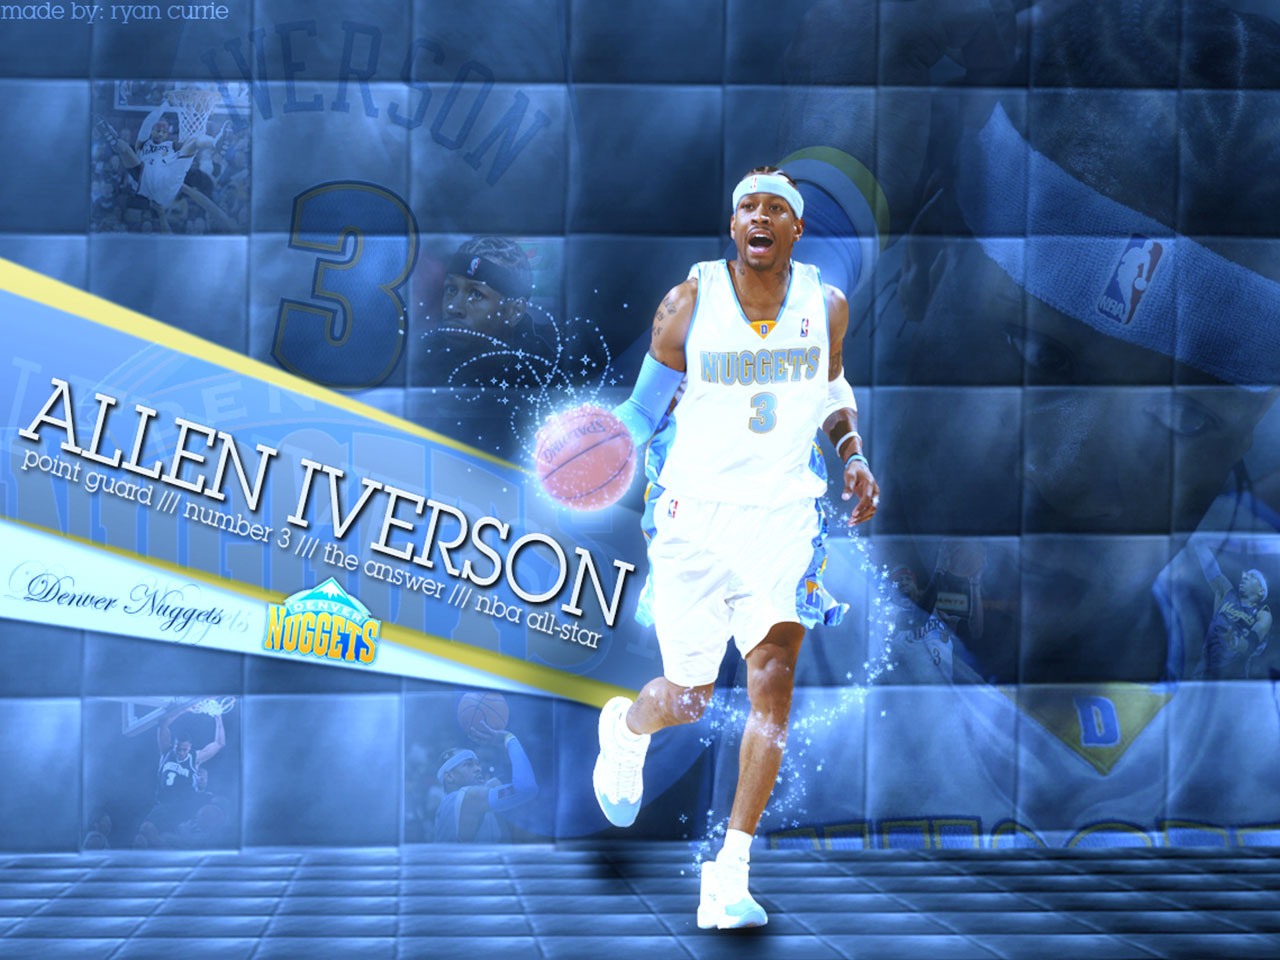 Allen Iverson Nba Wallpaper Basket Ball